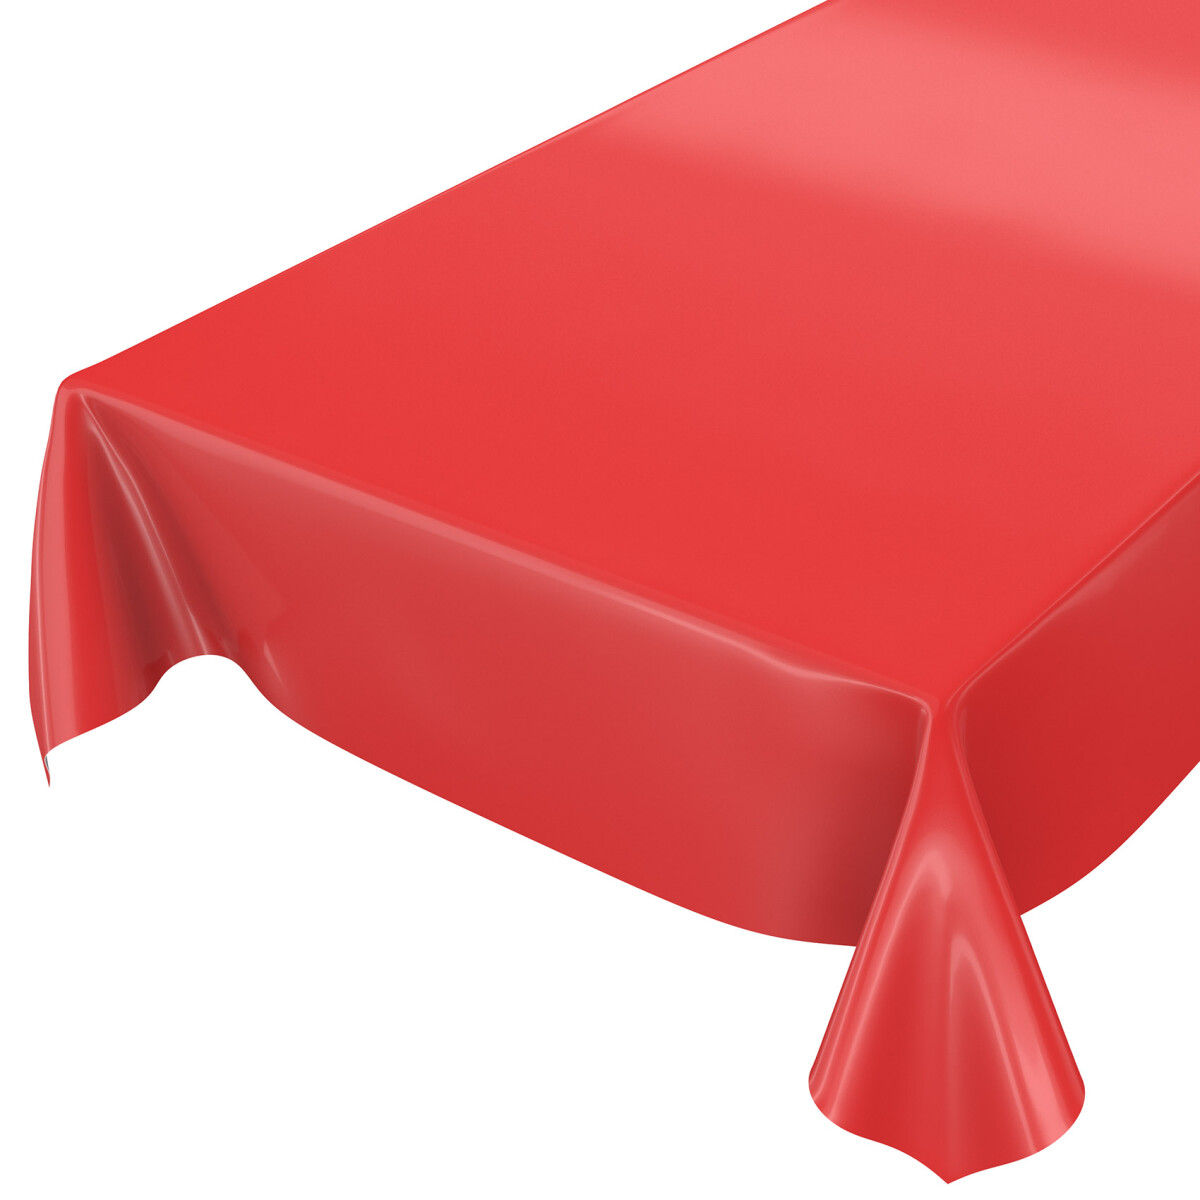 Wasserabweisende Tischdecke - Rot Glanz | Wachstuch.Shop, 5,99 €